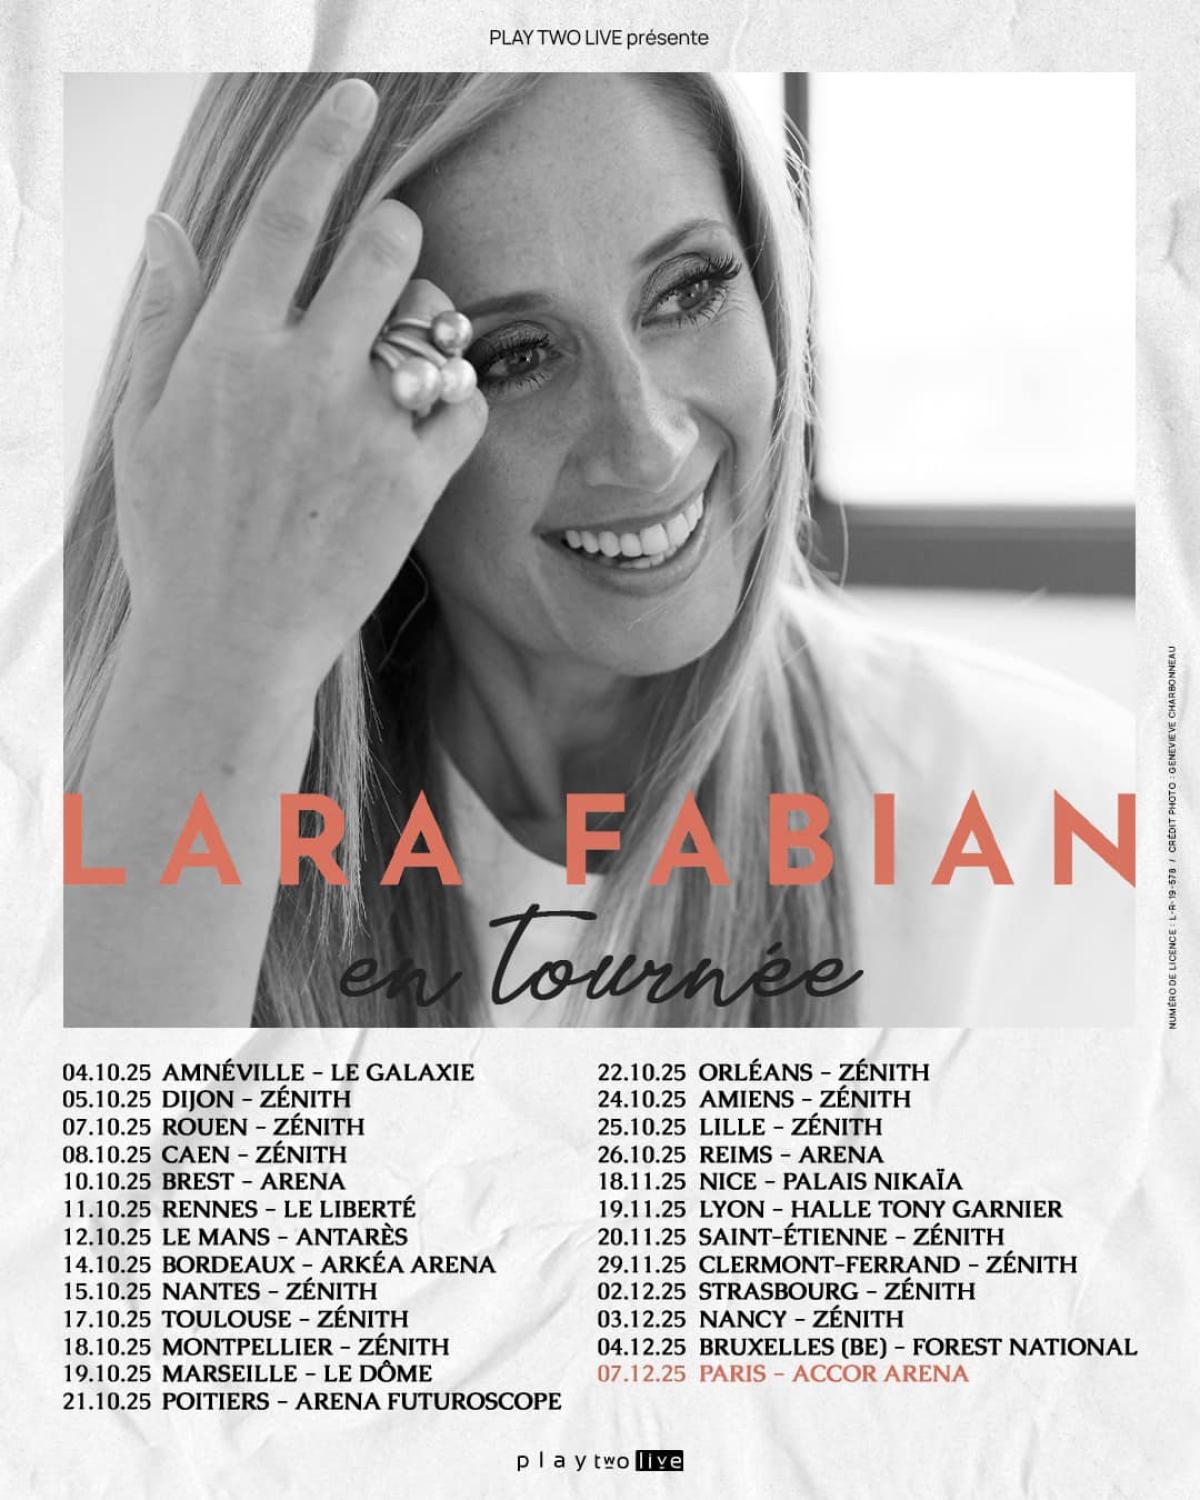 Lara Fabian at Brest Arena Tickets